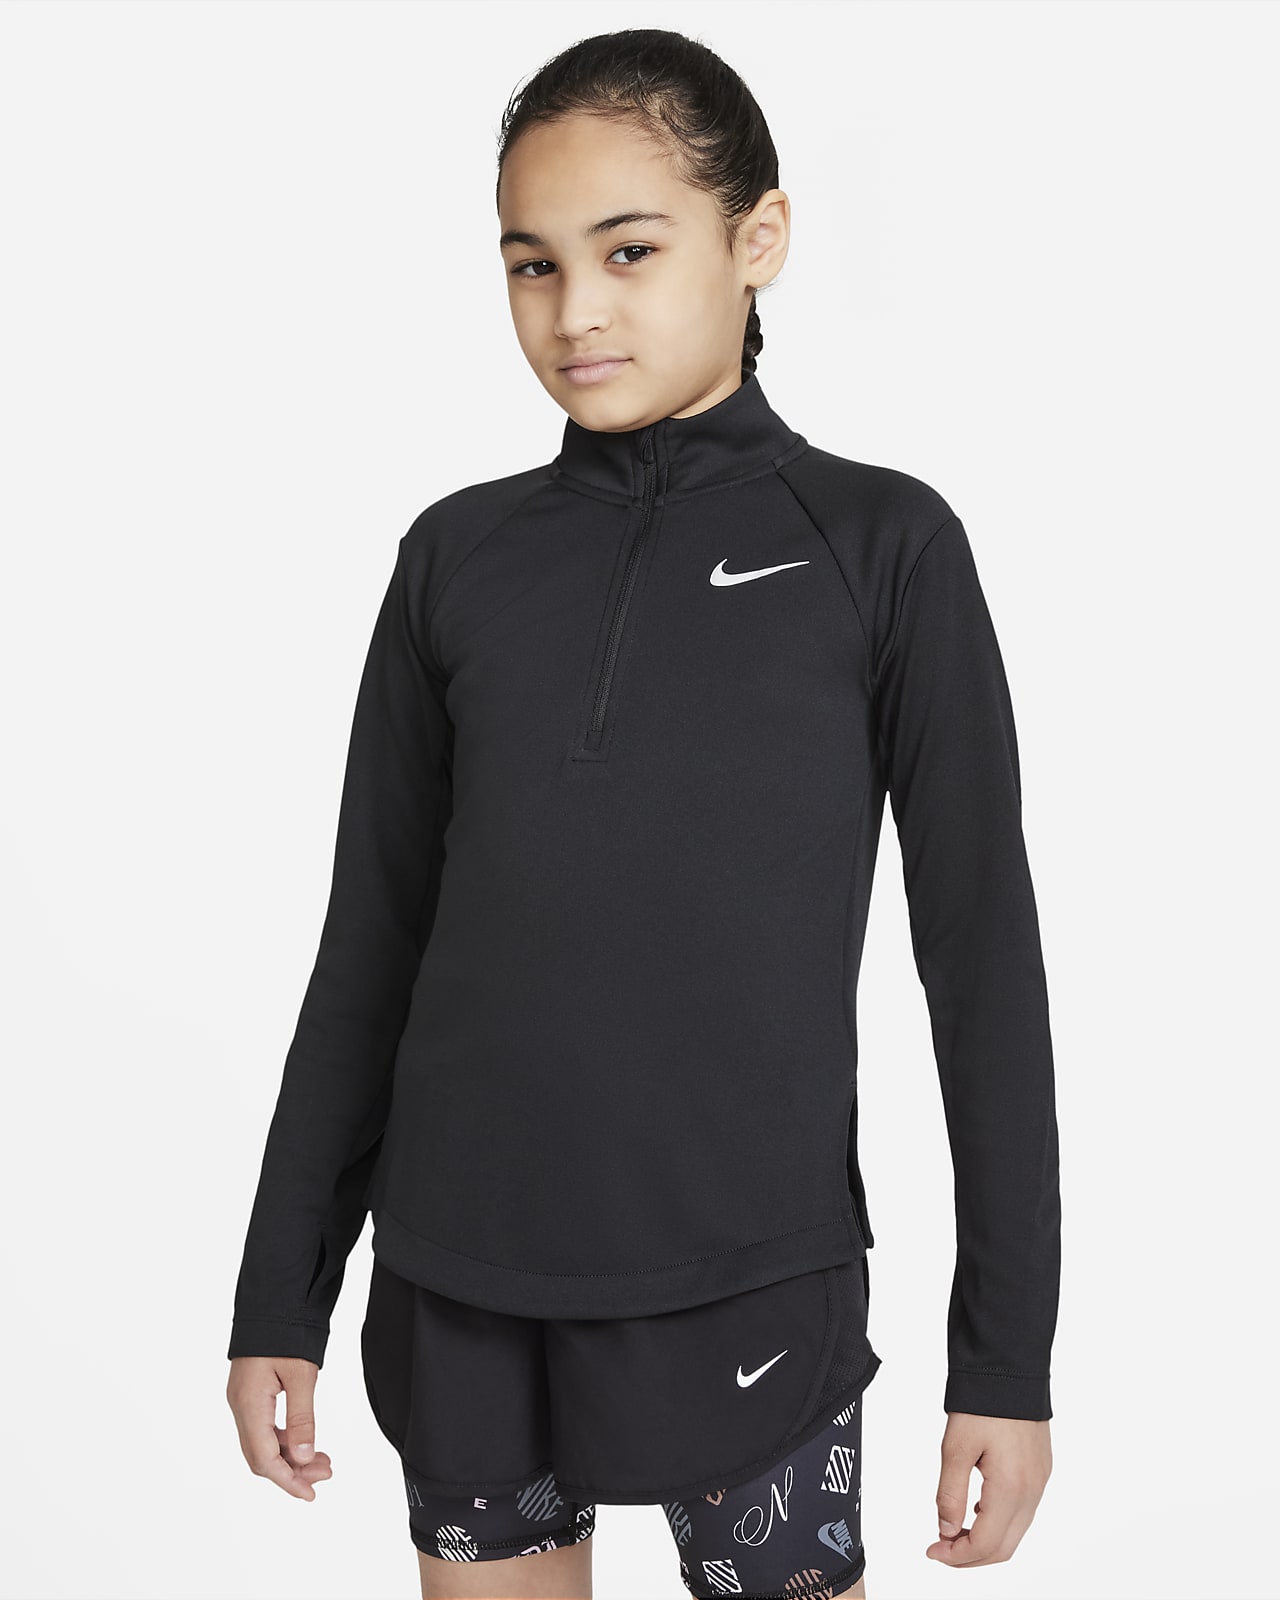 Långärmad löpartröja Nike Dri-FIT för ungdom (tjejer)